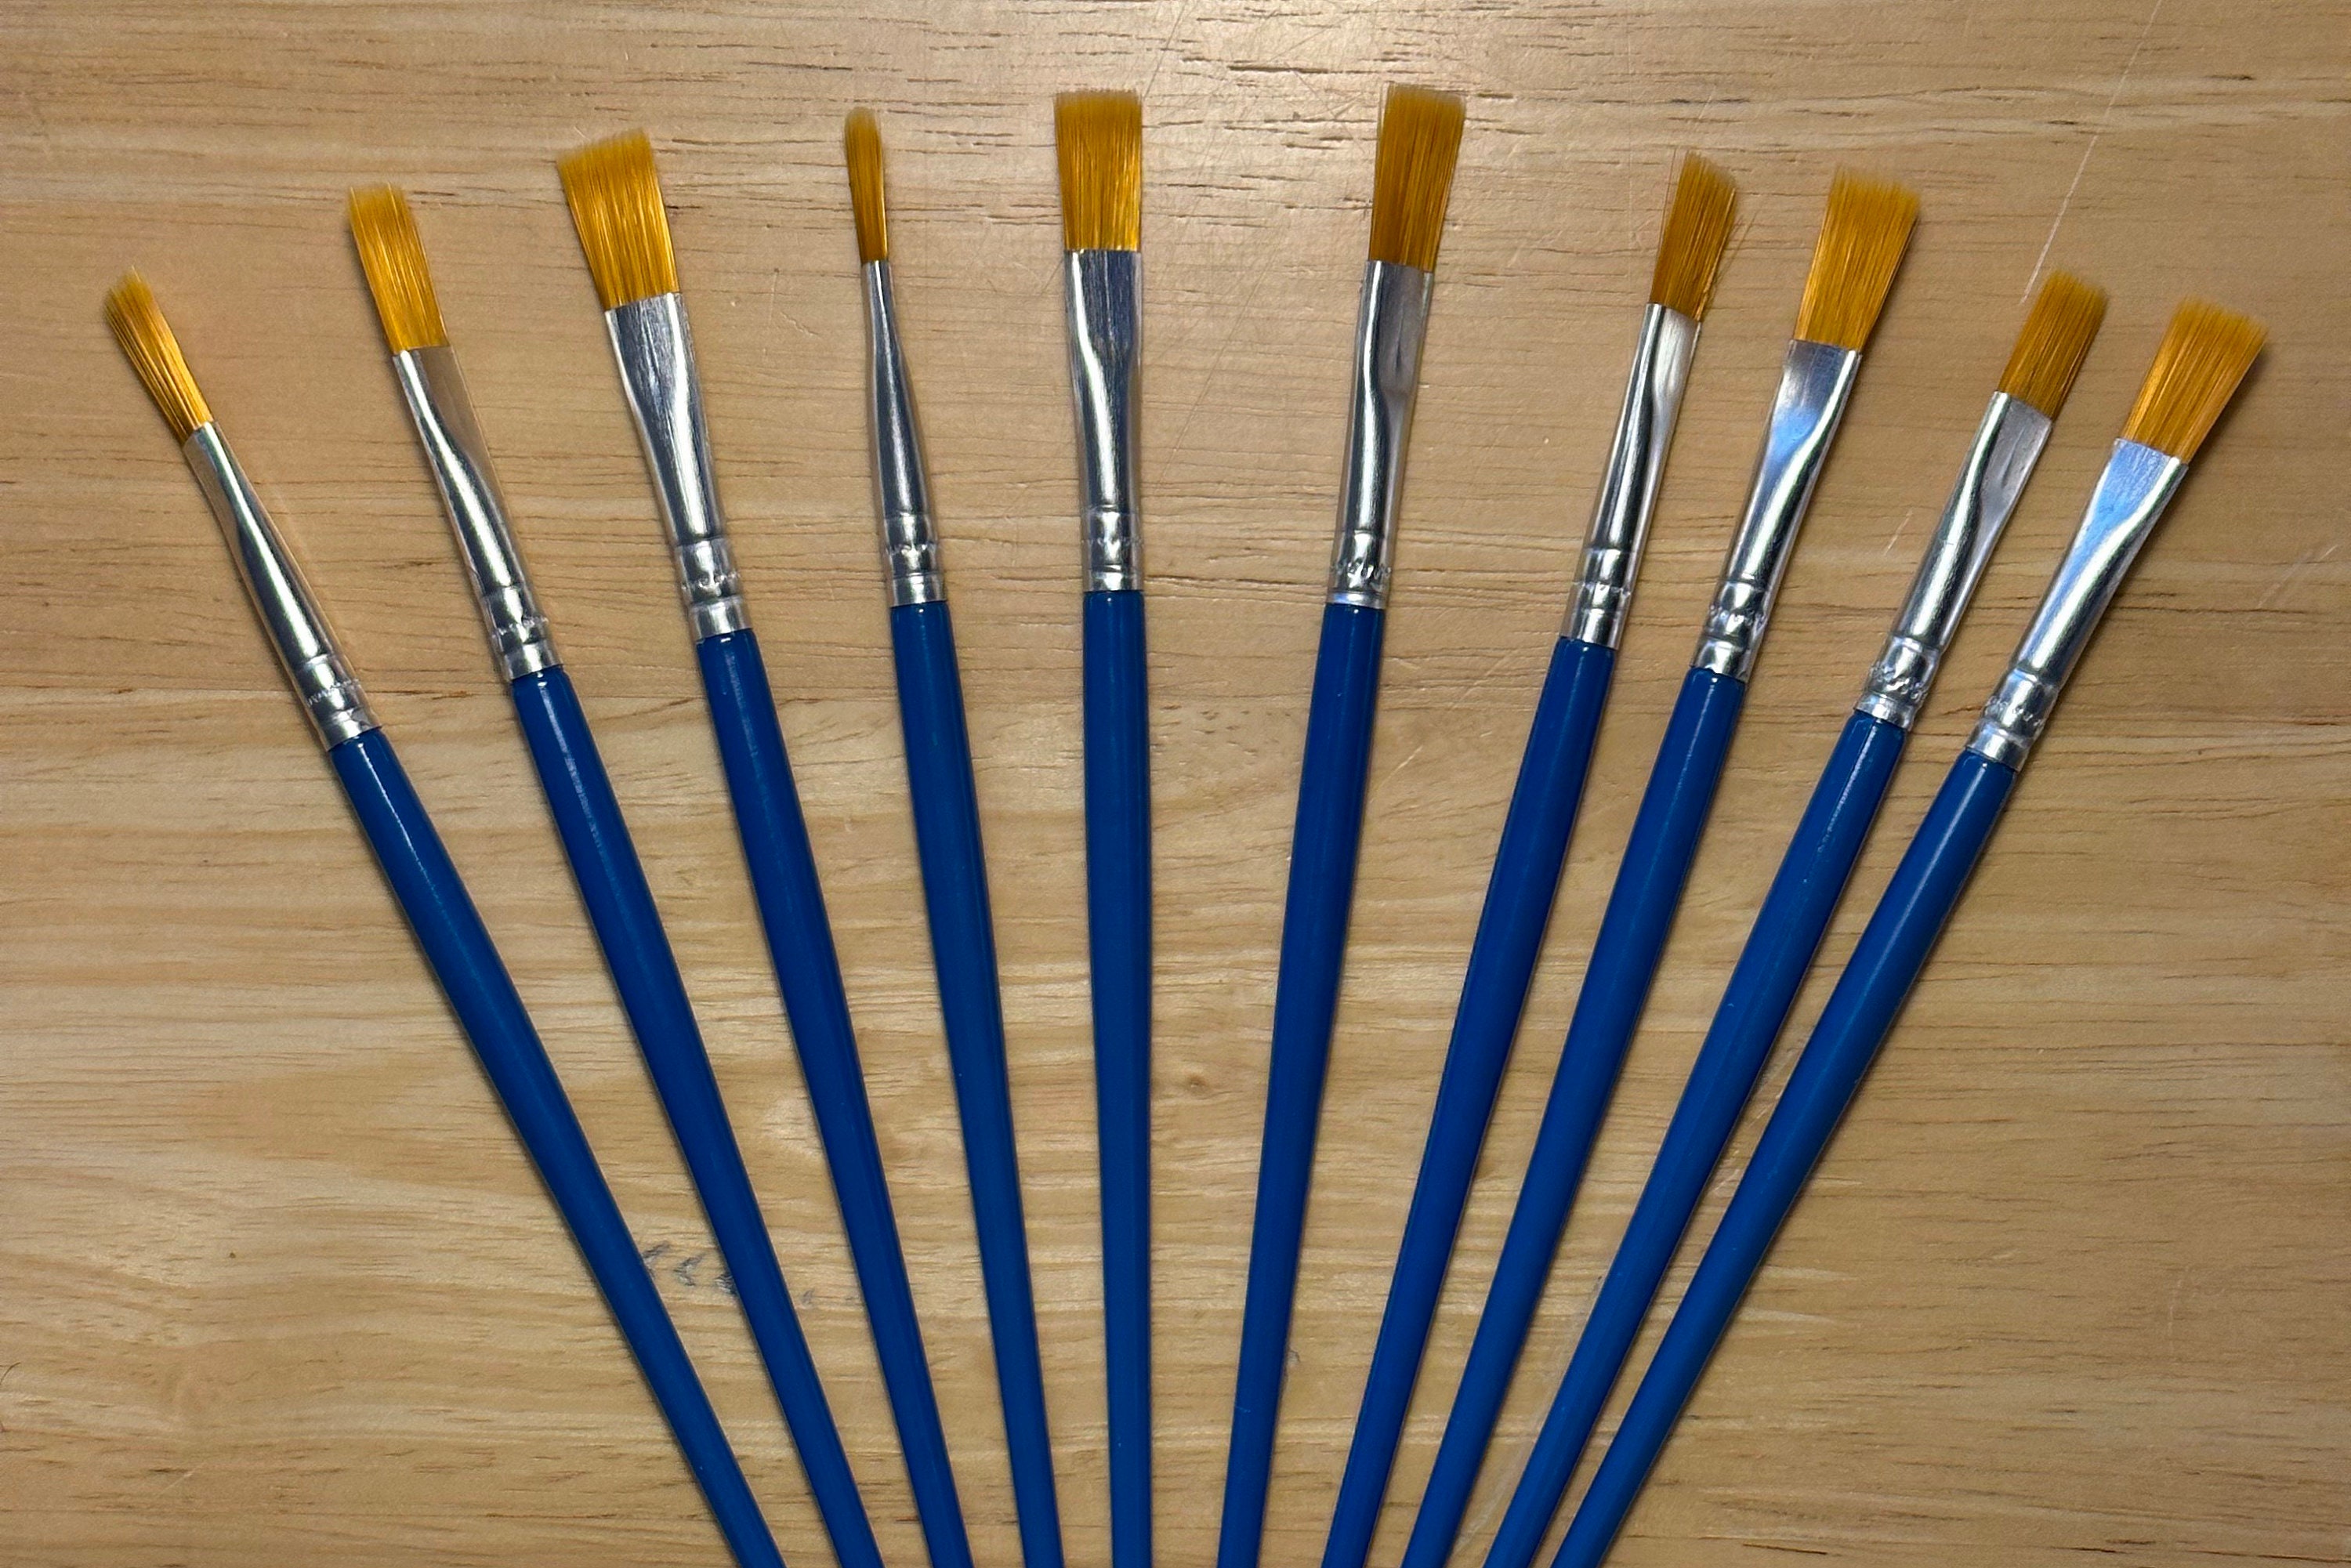 Mahogany Crayola Crayons Set of 10 